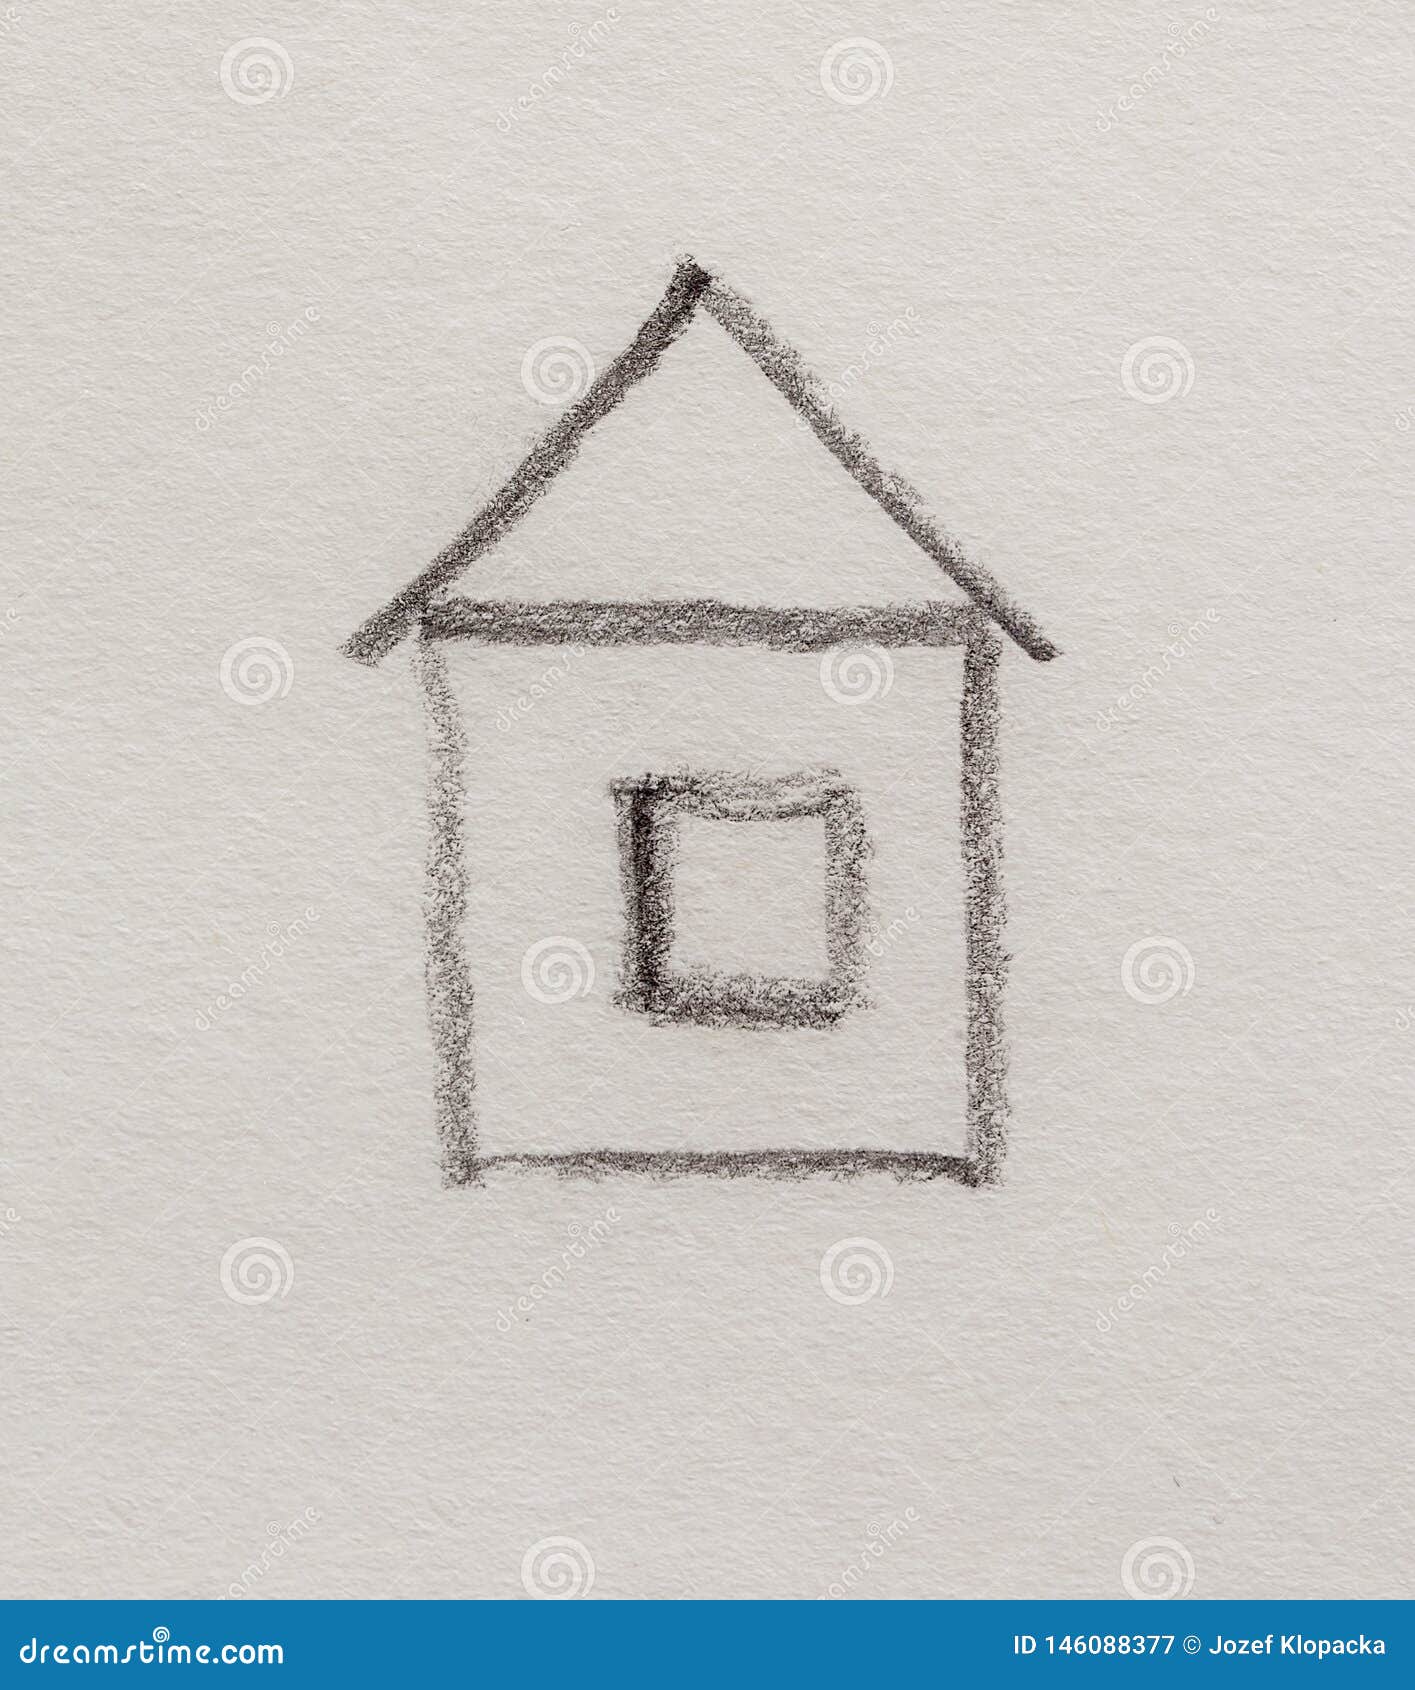 Dibujo Simbólico De Una Casa, Dibujo De Symple De Lápiz En El Papel Stock  de ilustración - Ilustración de puerta, casero: 146088377